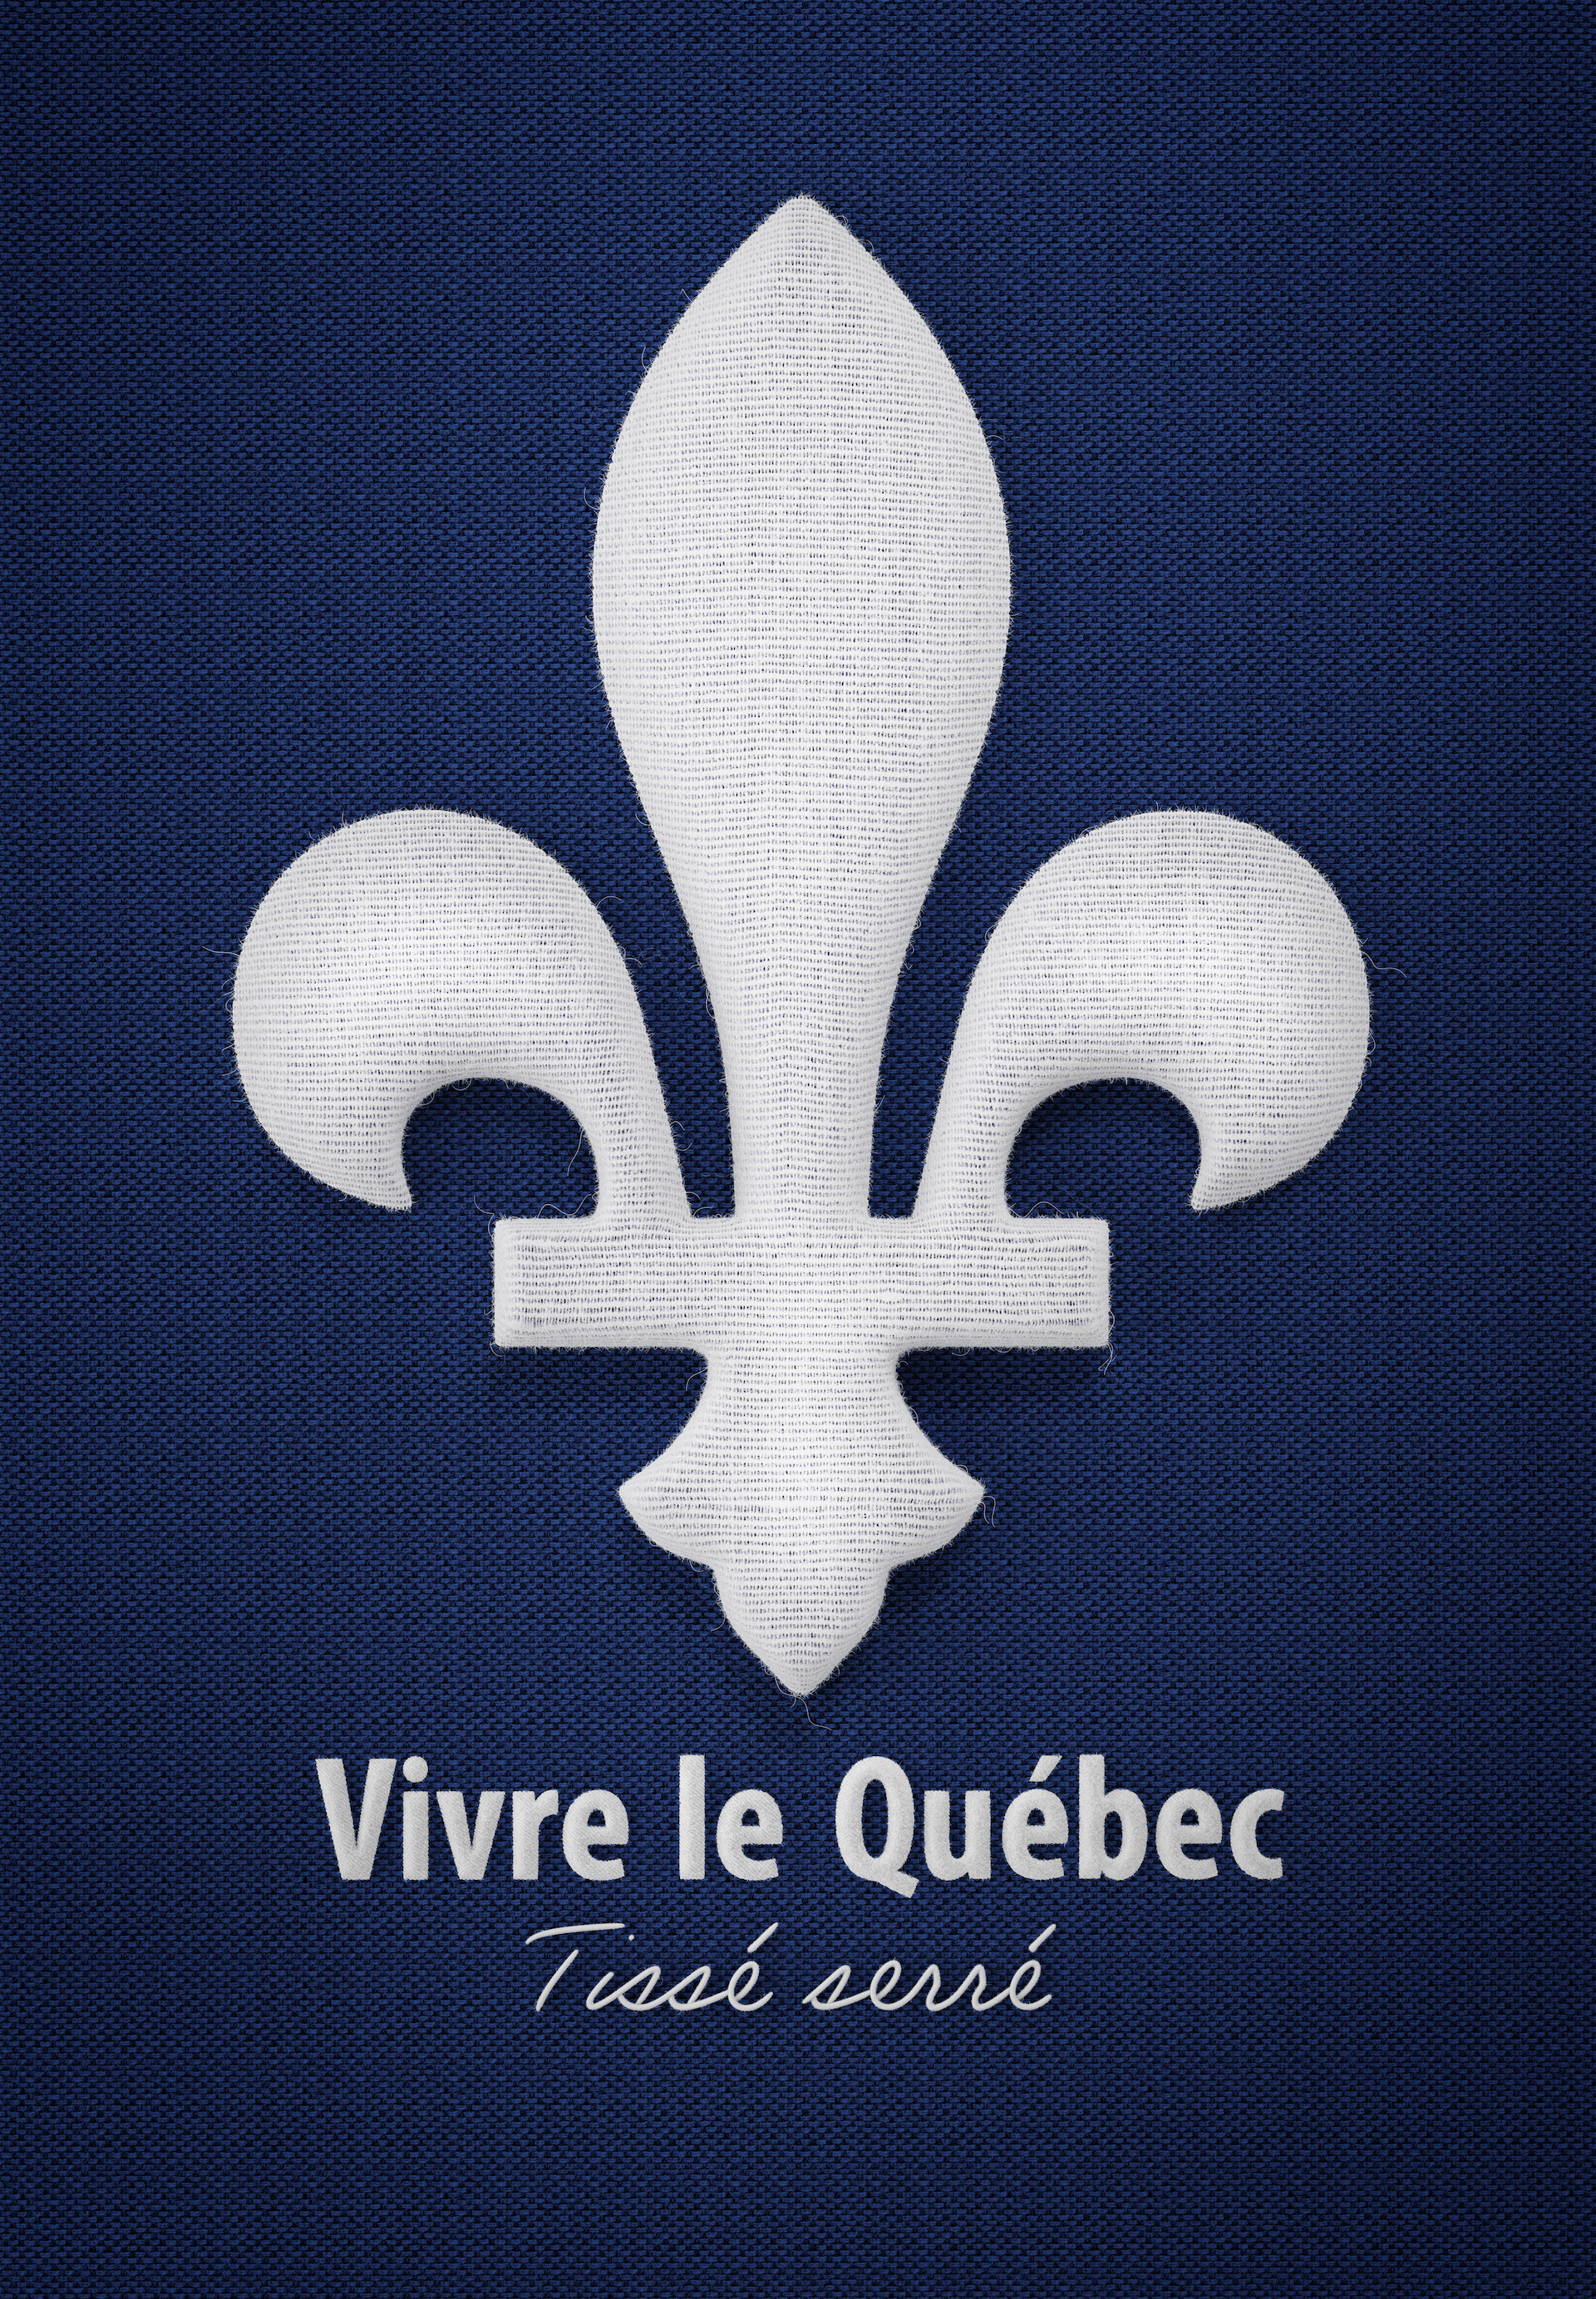 KUB Studio | Texture 3D | Fleur de lys blanc tissé sur fond bleu avec slogan "Vivre le Québec: Tissé serré"